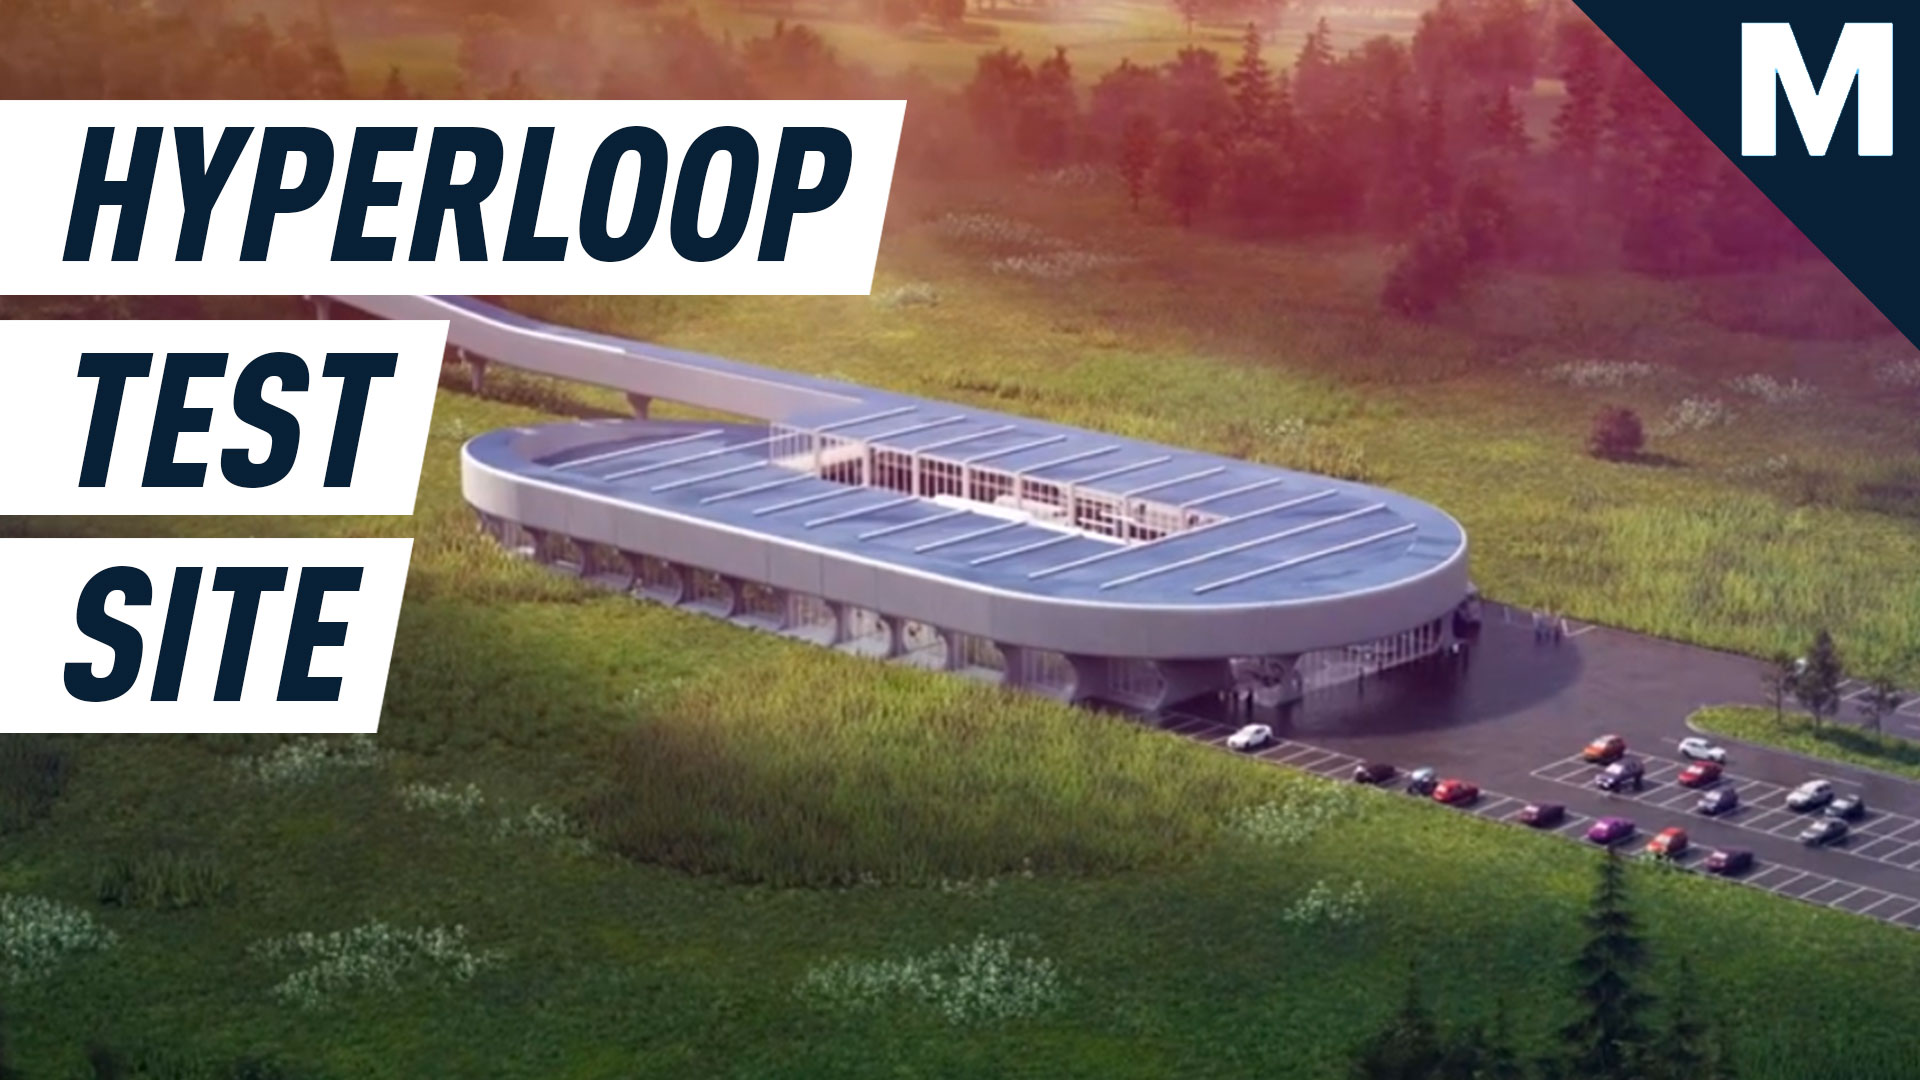 Virgin is working to elevate hyperloop travel by 2030